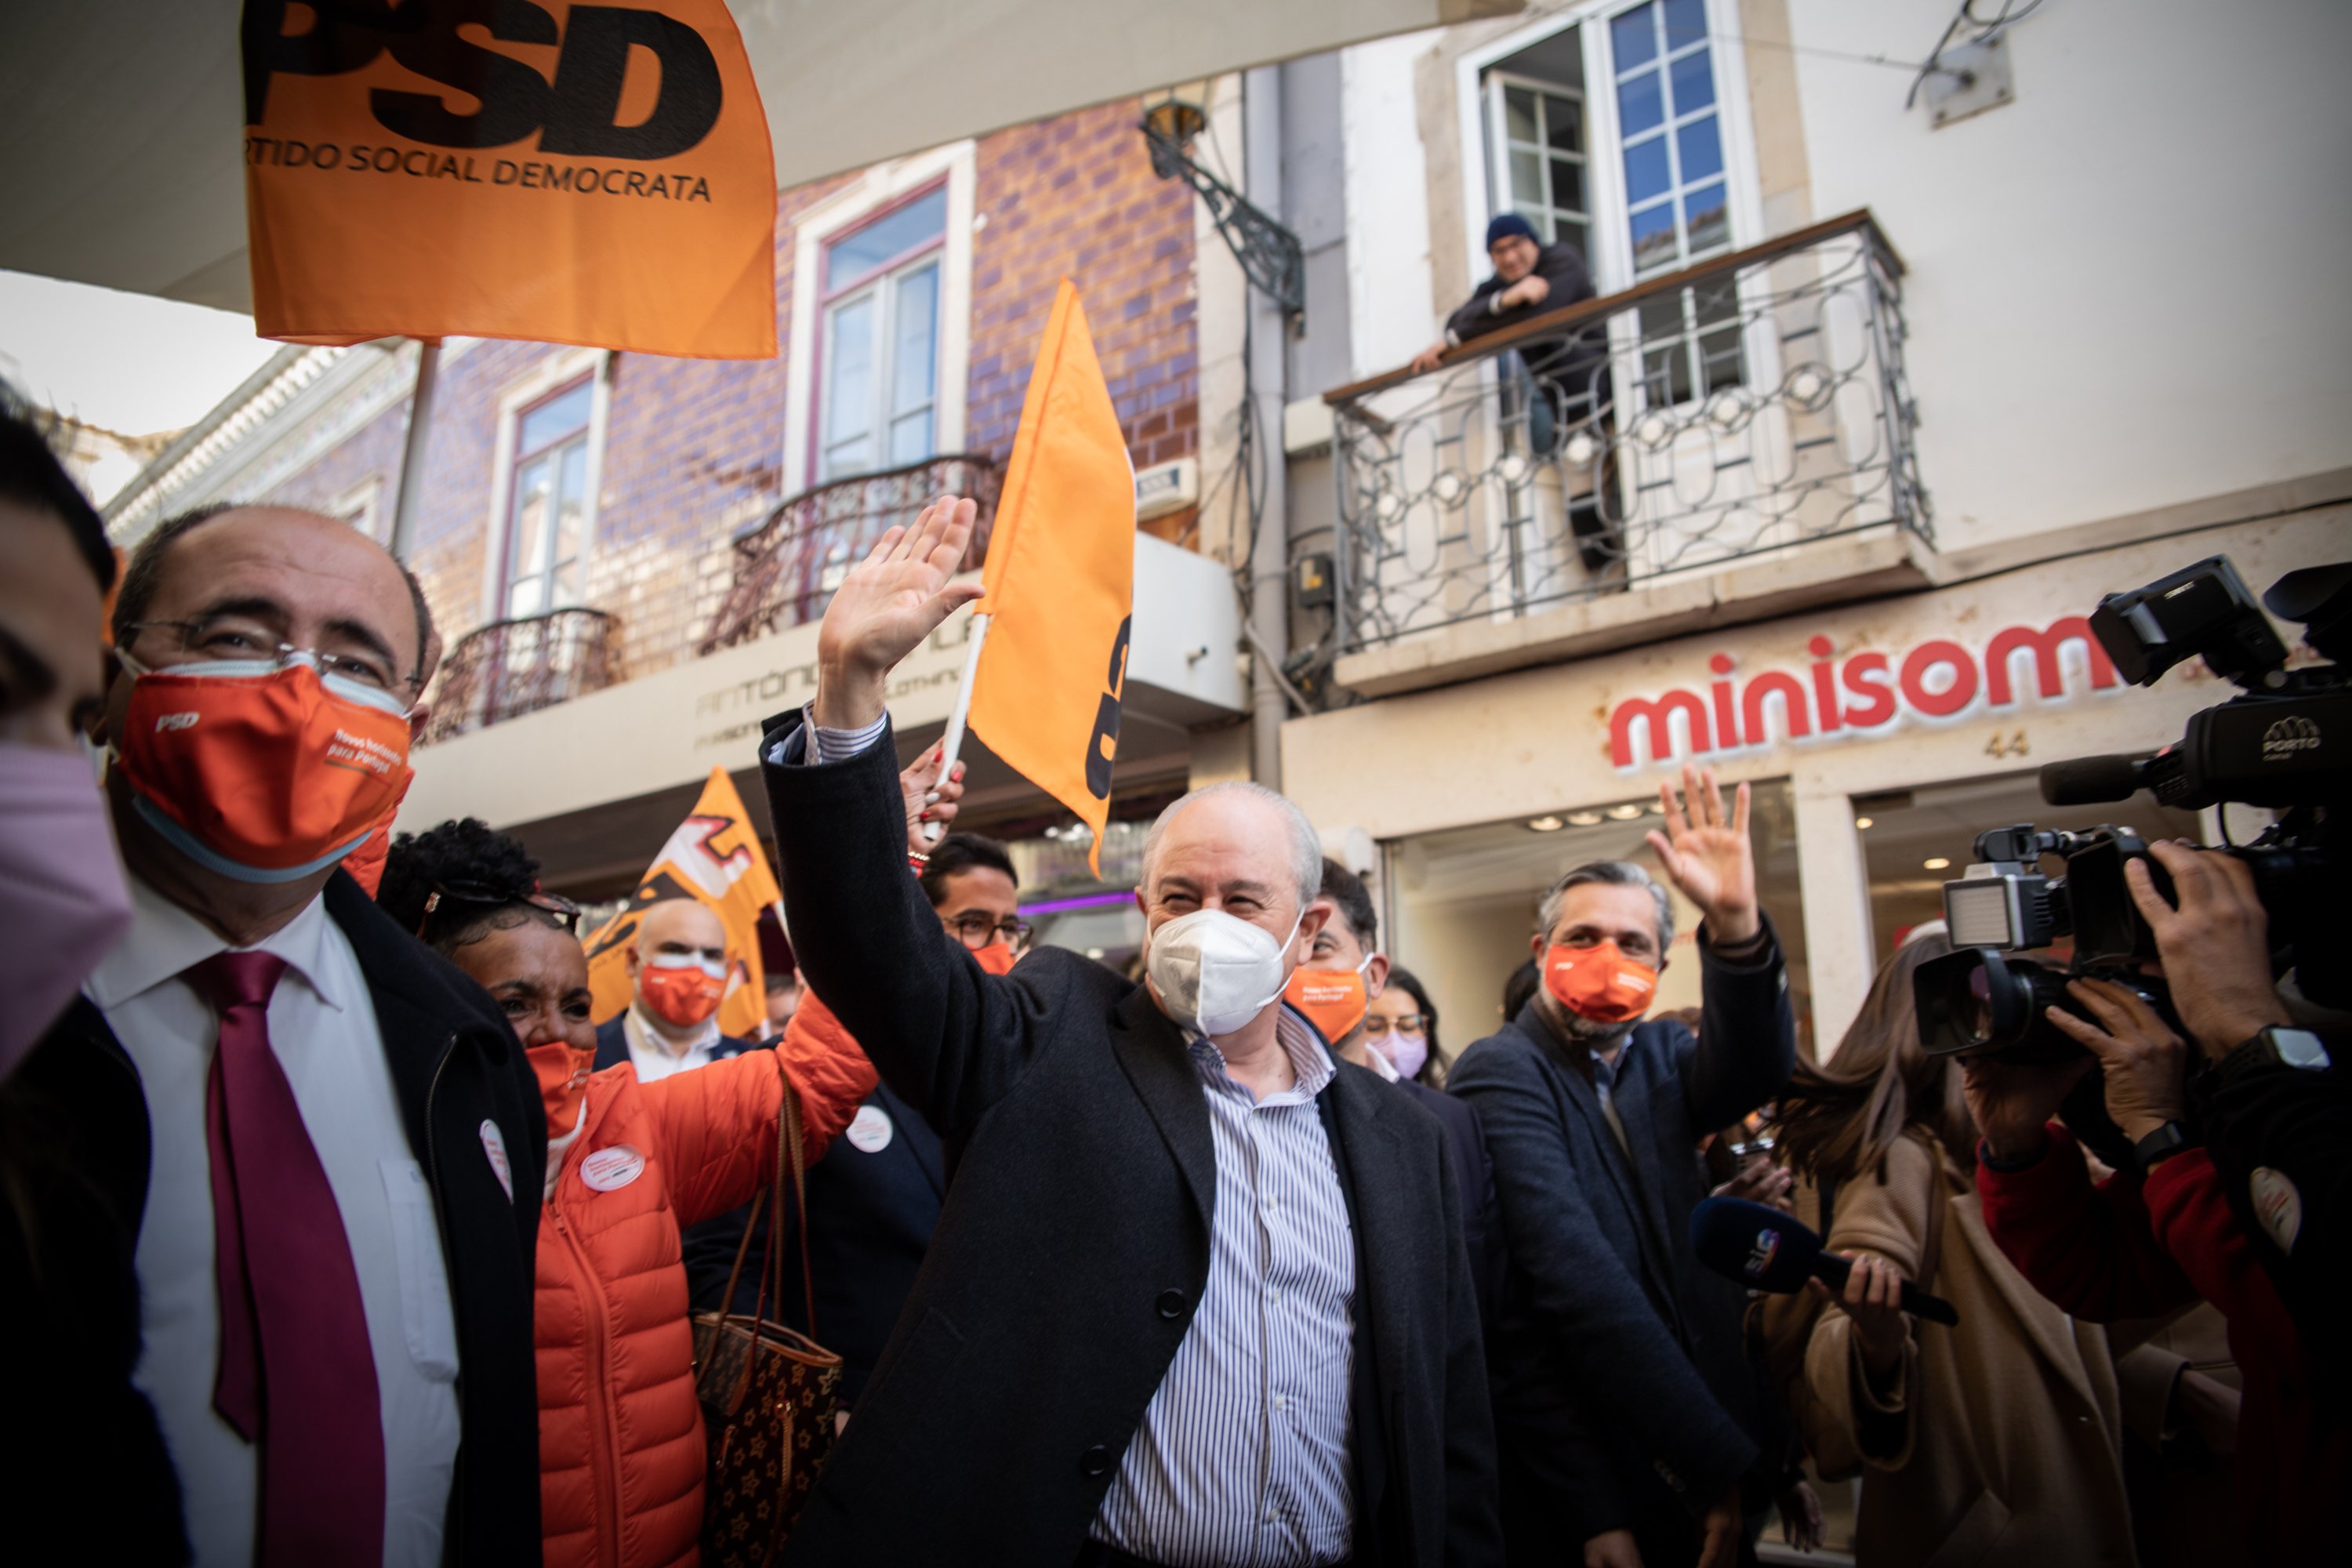 ELEIÇOES LEGISLATIVAS: Rui Rio, lider do Partido Social Democrata (PSD), durante uma arruada em Faro. As eleições legislativas realizam-se no próximo dia 30 de Janeiro. 25 de Janeiro de 2022, Faro TOMÁS SILVA/OBSERVADOR